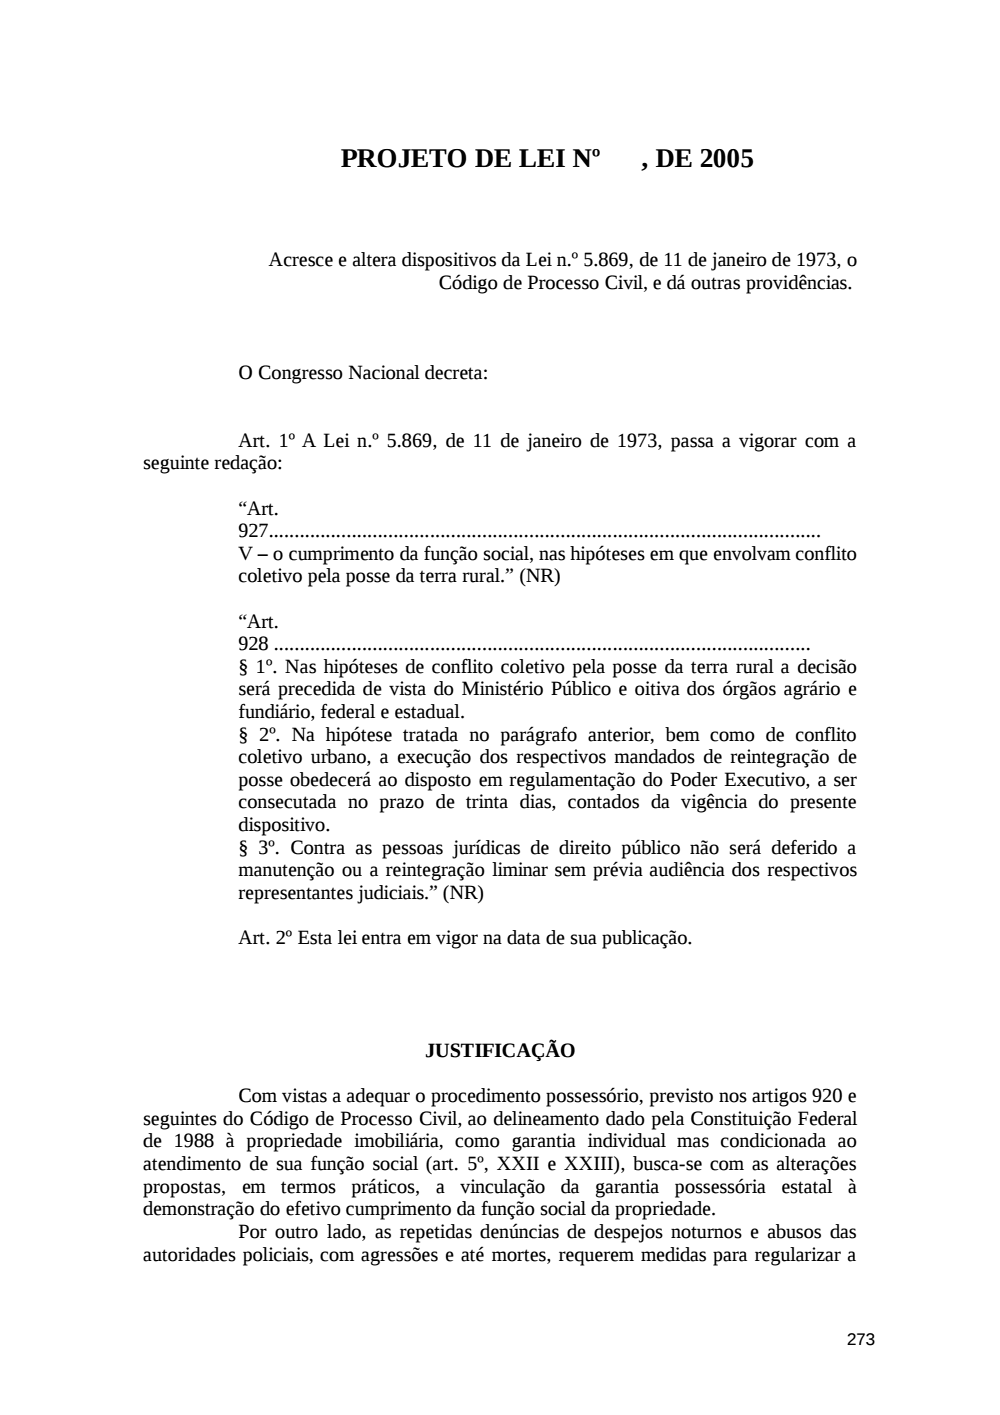 Page 273 from Relatório final da comissão